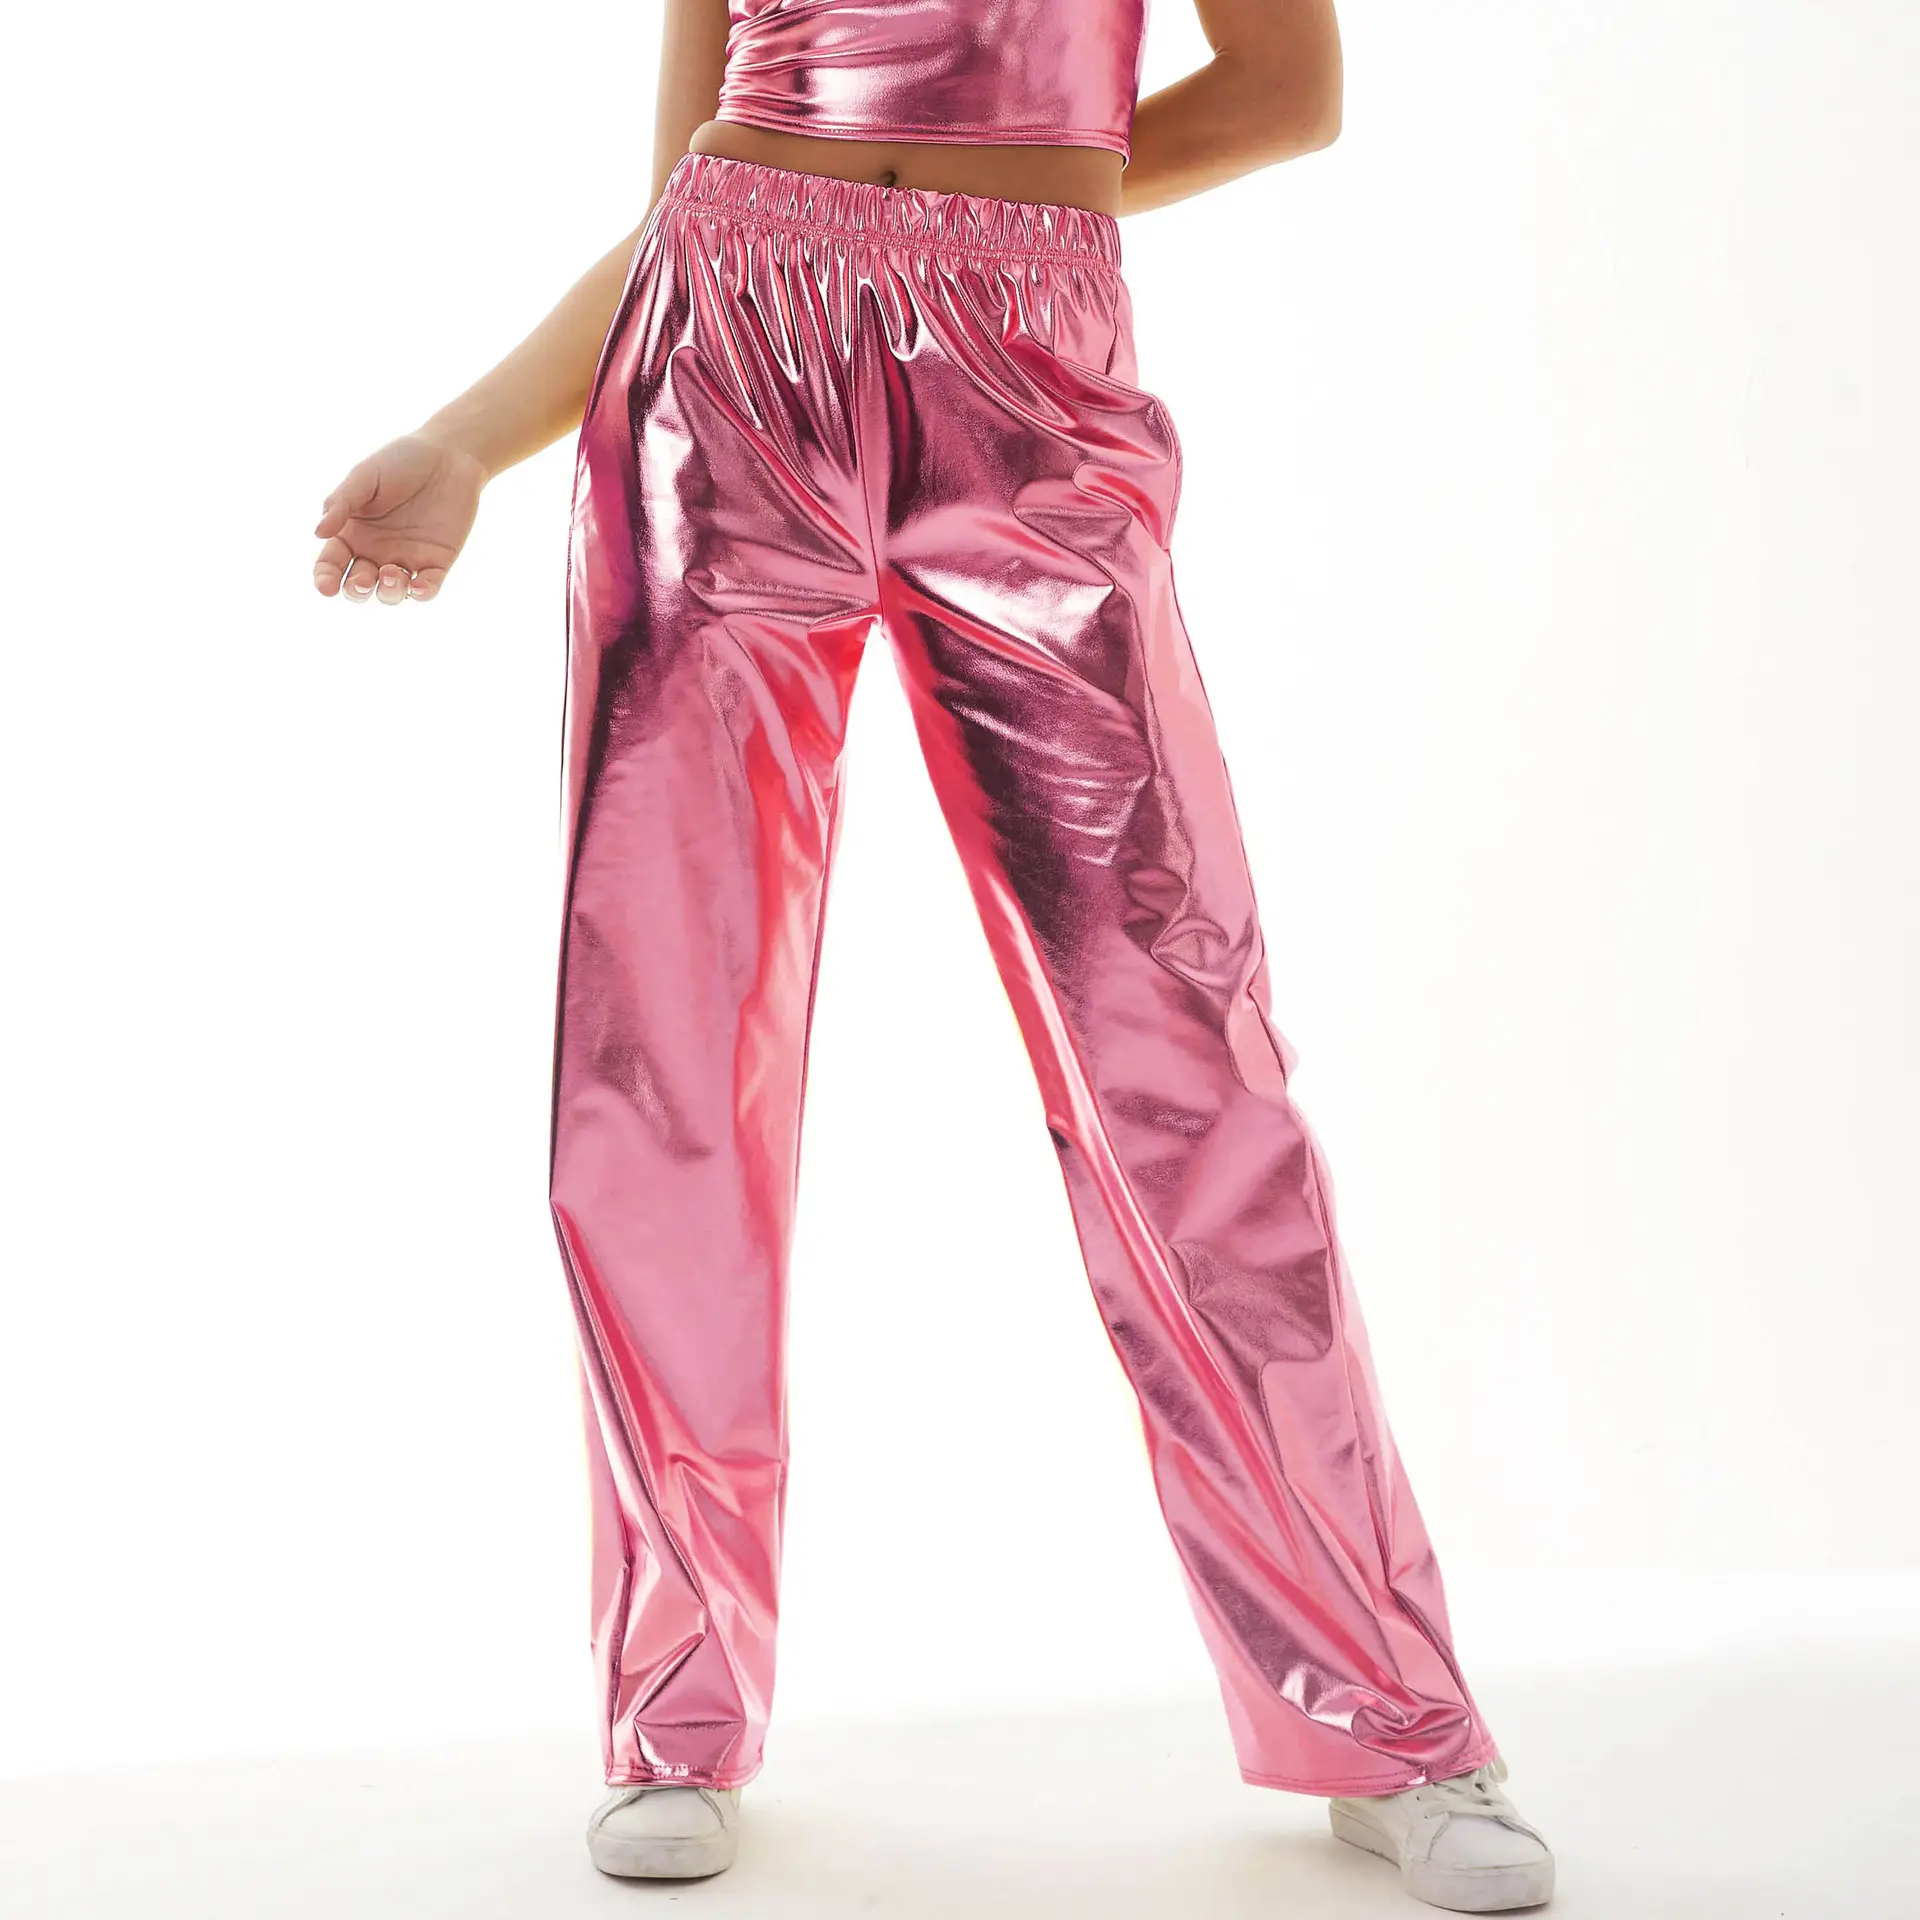 King Mcgreen star nouveauté femmes brillant métallisé poche pantalon ample danse streetwear vêtements décontracté solide chaud or pantalon